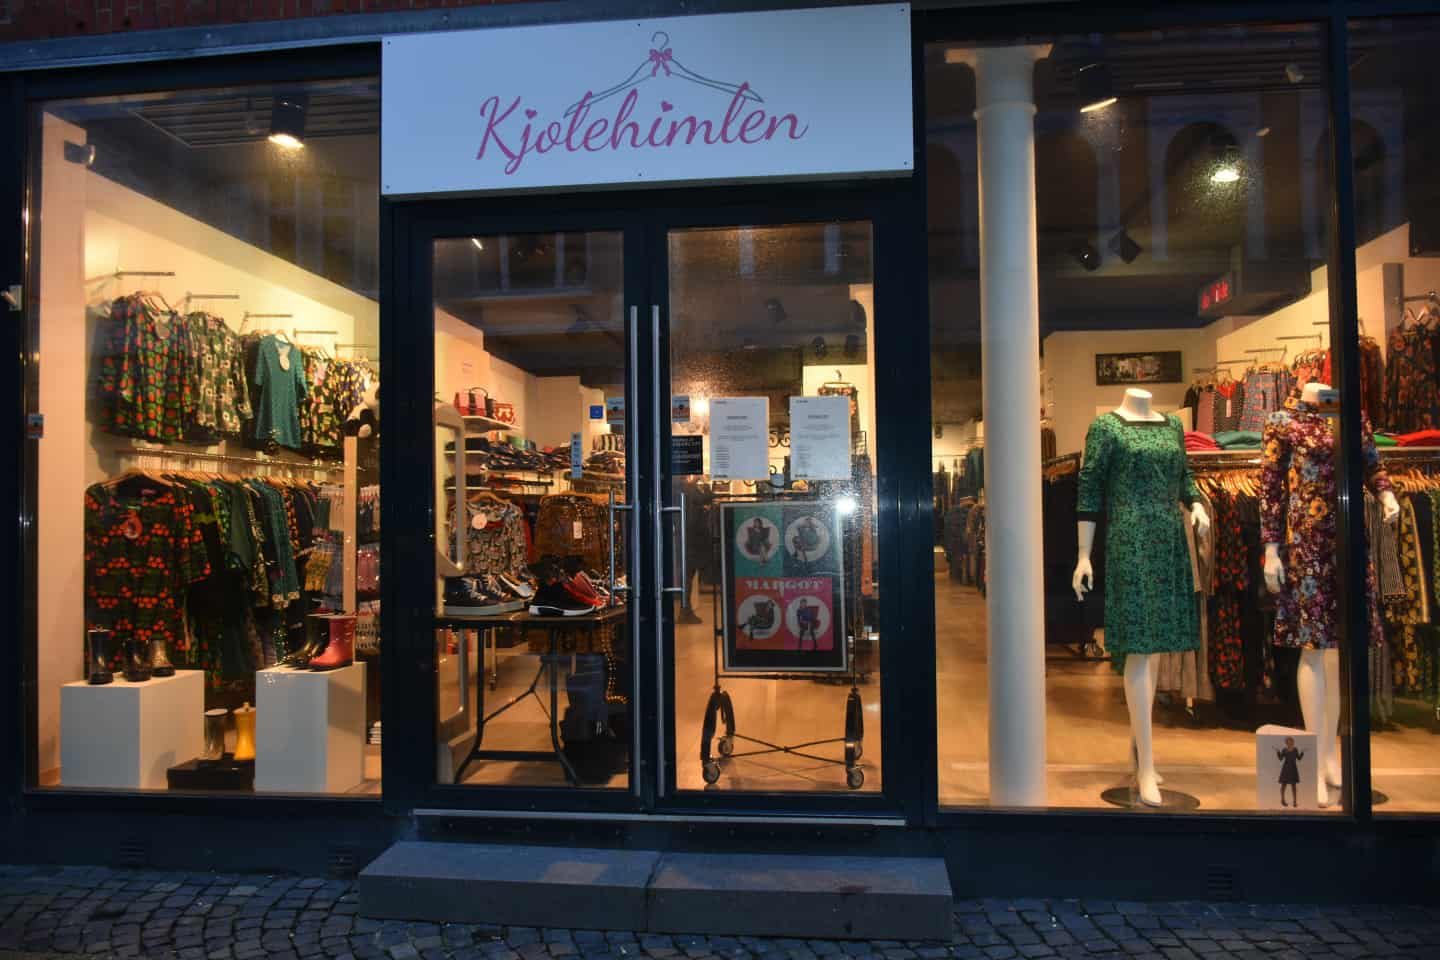 Kjolehimlens konkurs kom bag både kunder og indehaver | jv.dk